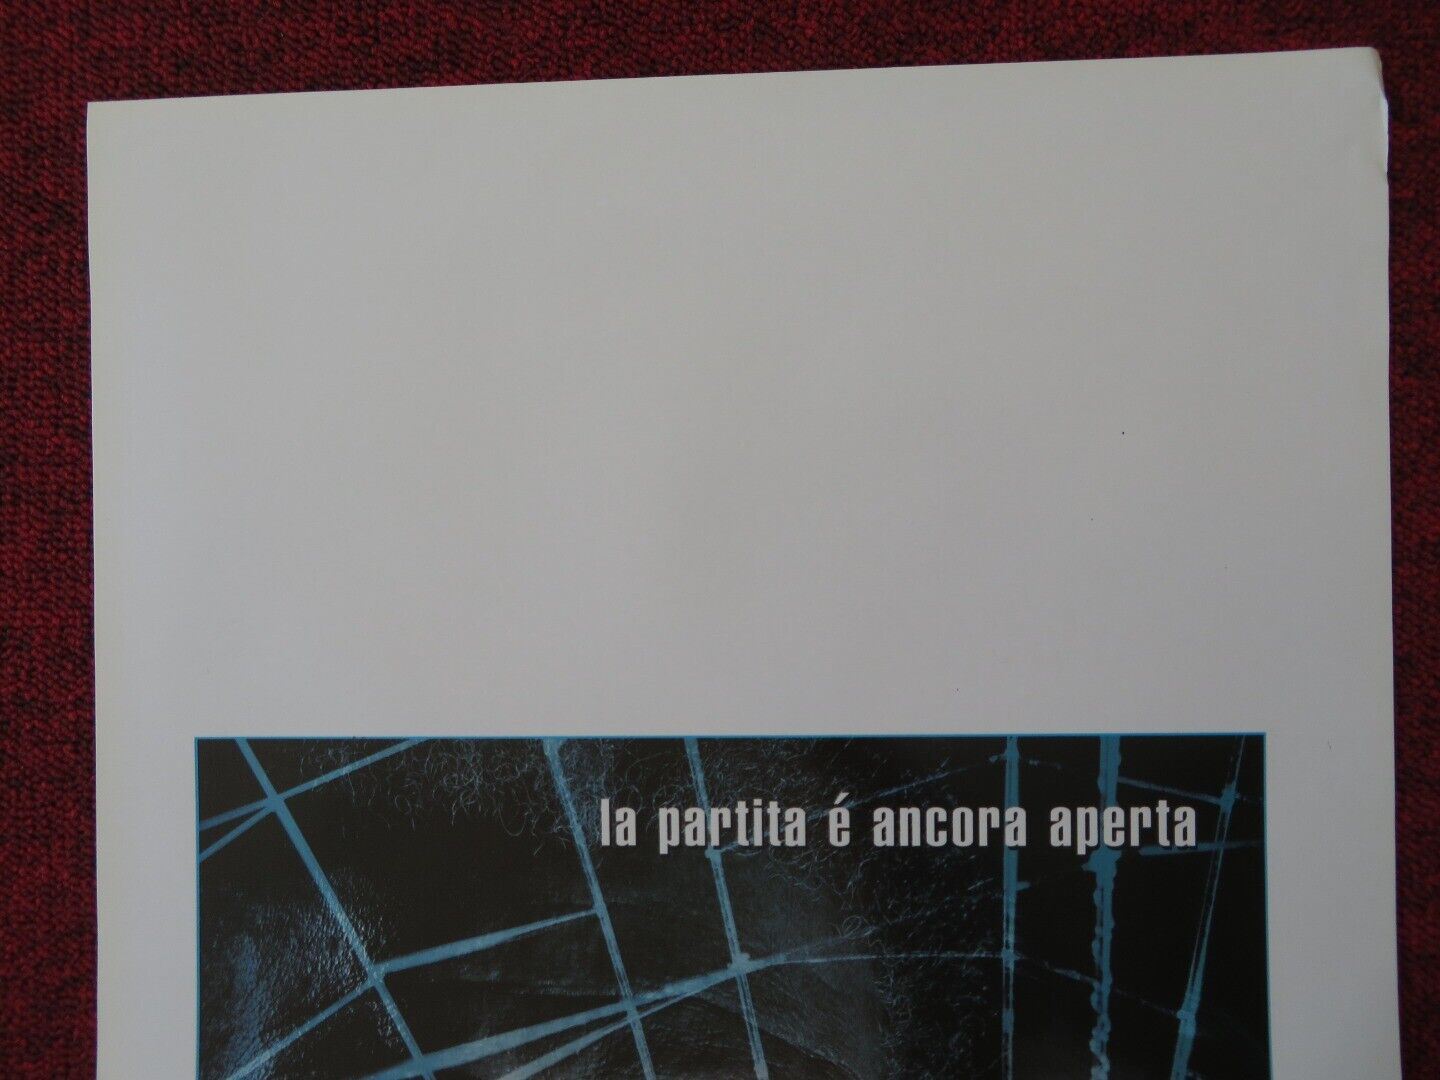 ALONG CAME A SPIDER ITALIAN LOCANDINA (27.5"x13") POSTER MORGAN FREEMAN 2001